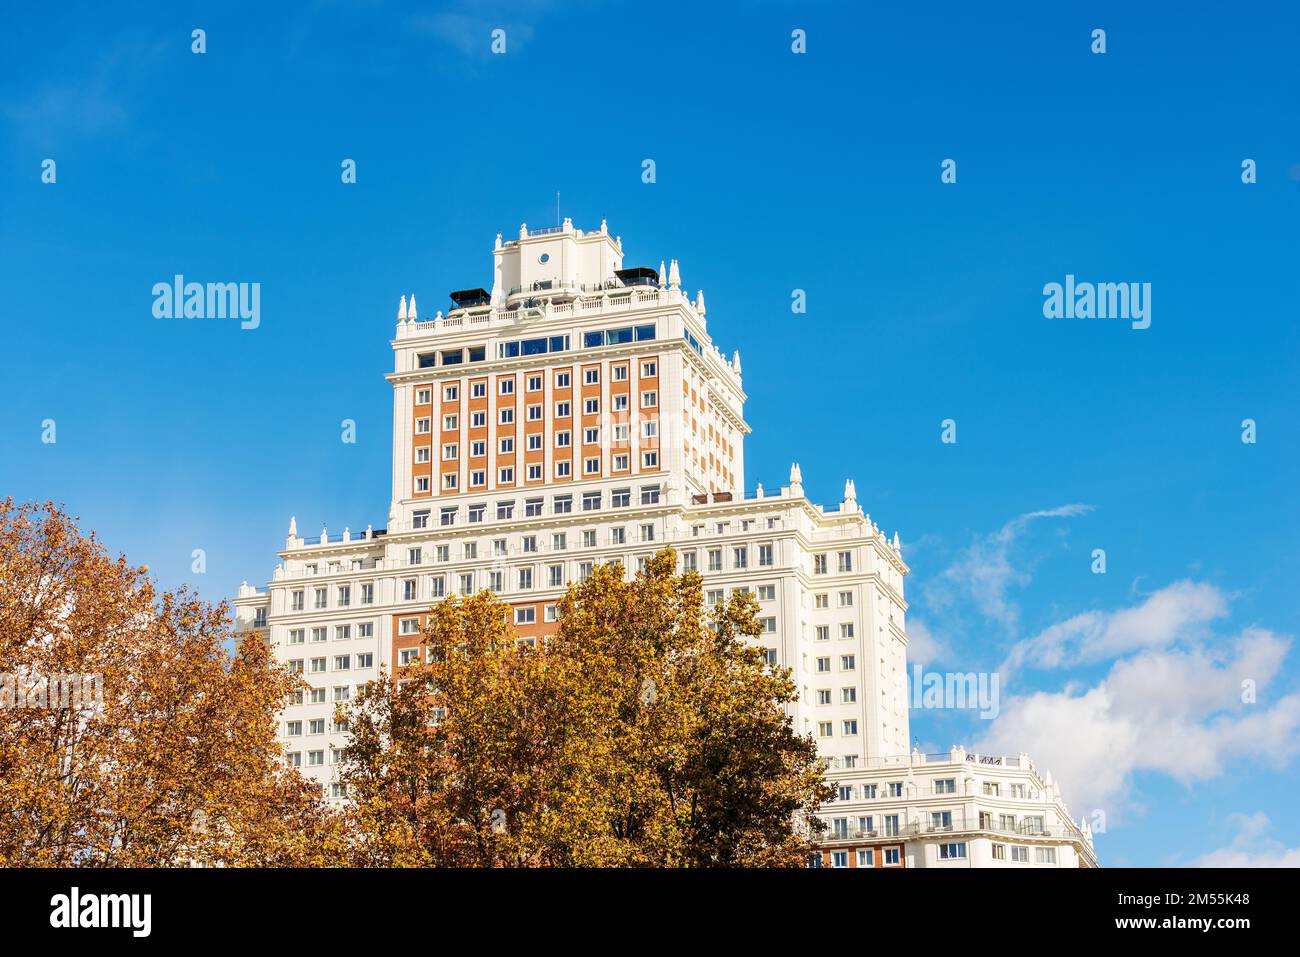 Madrid centro. Facciata del grattacielo in Plaza de Espana chiamata edificio de Espana (edificio spagnolo), 1948-1953 in stile neo-barocco. Spagna, Europa Foto Stock